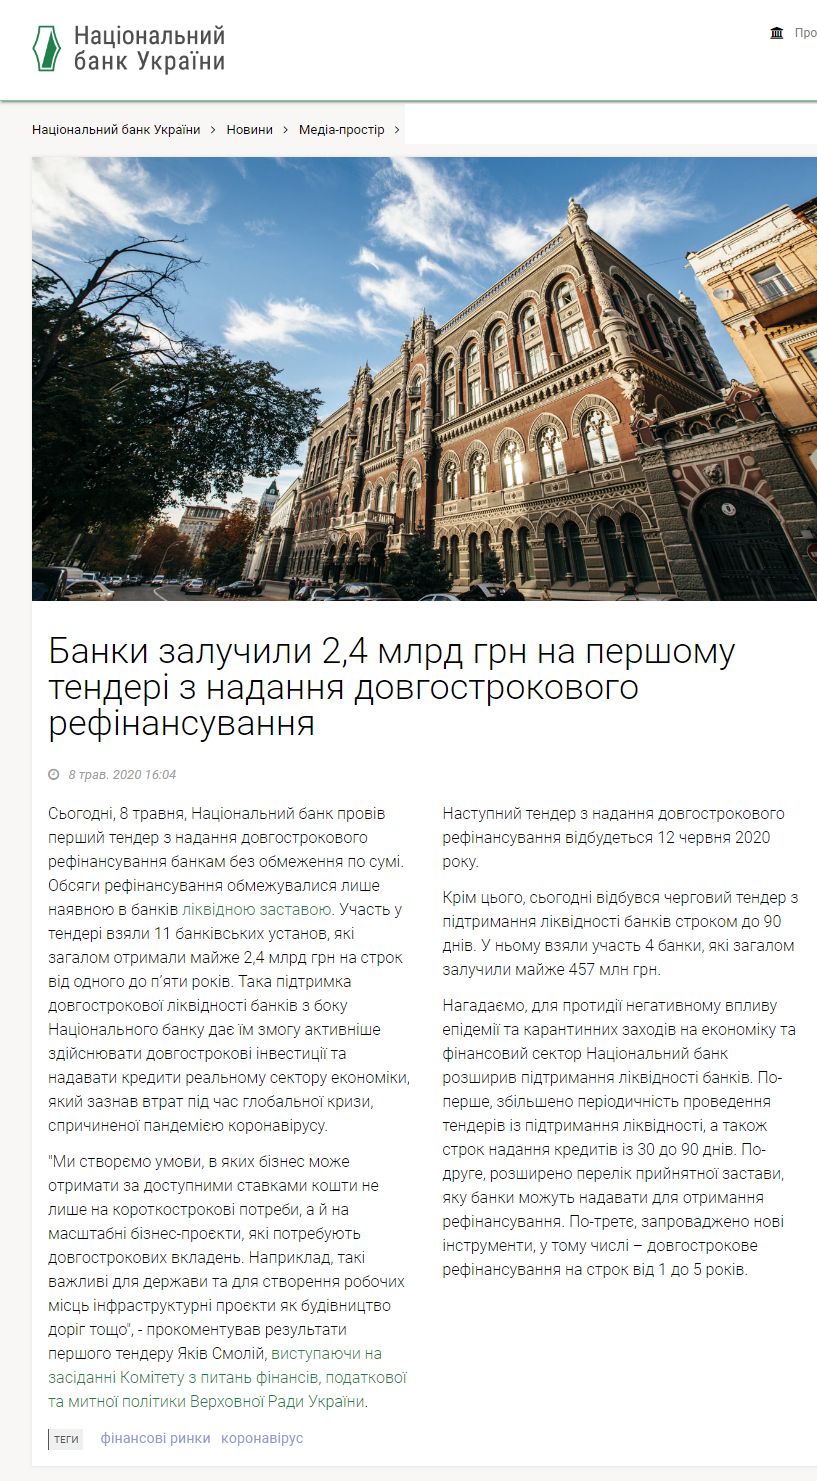 https://bank.gov.ua/ua/news/all/banki-zaluchili-24-mlrd-na-pershomu-tenderi-z-nadannya-dovgostrokovogo-refinansuvannya